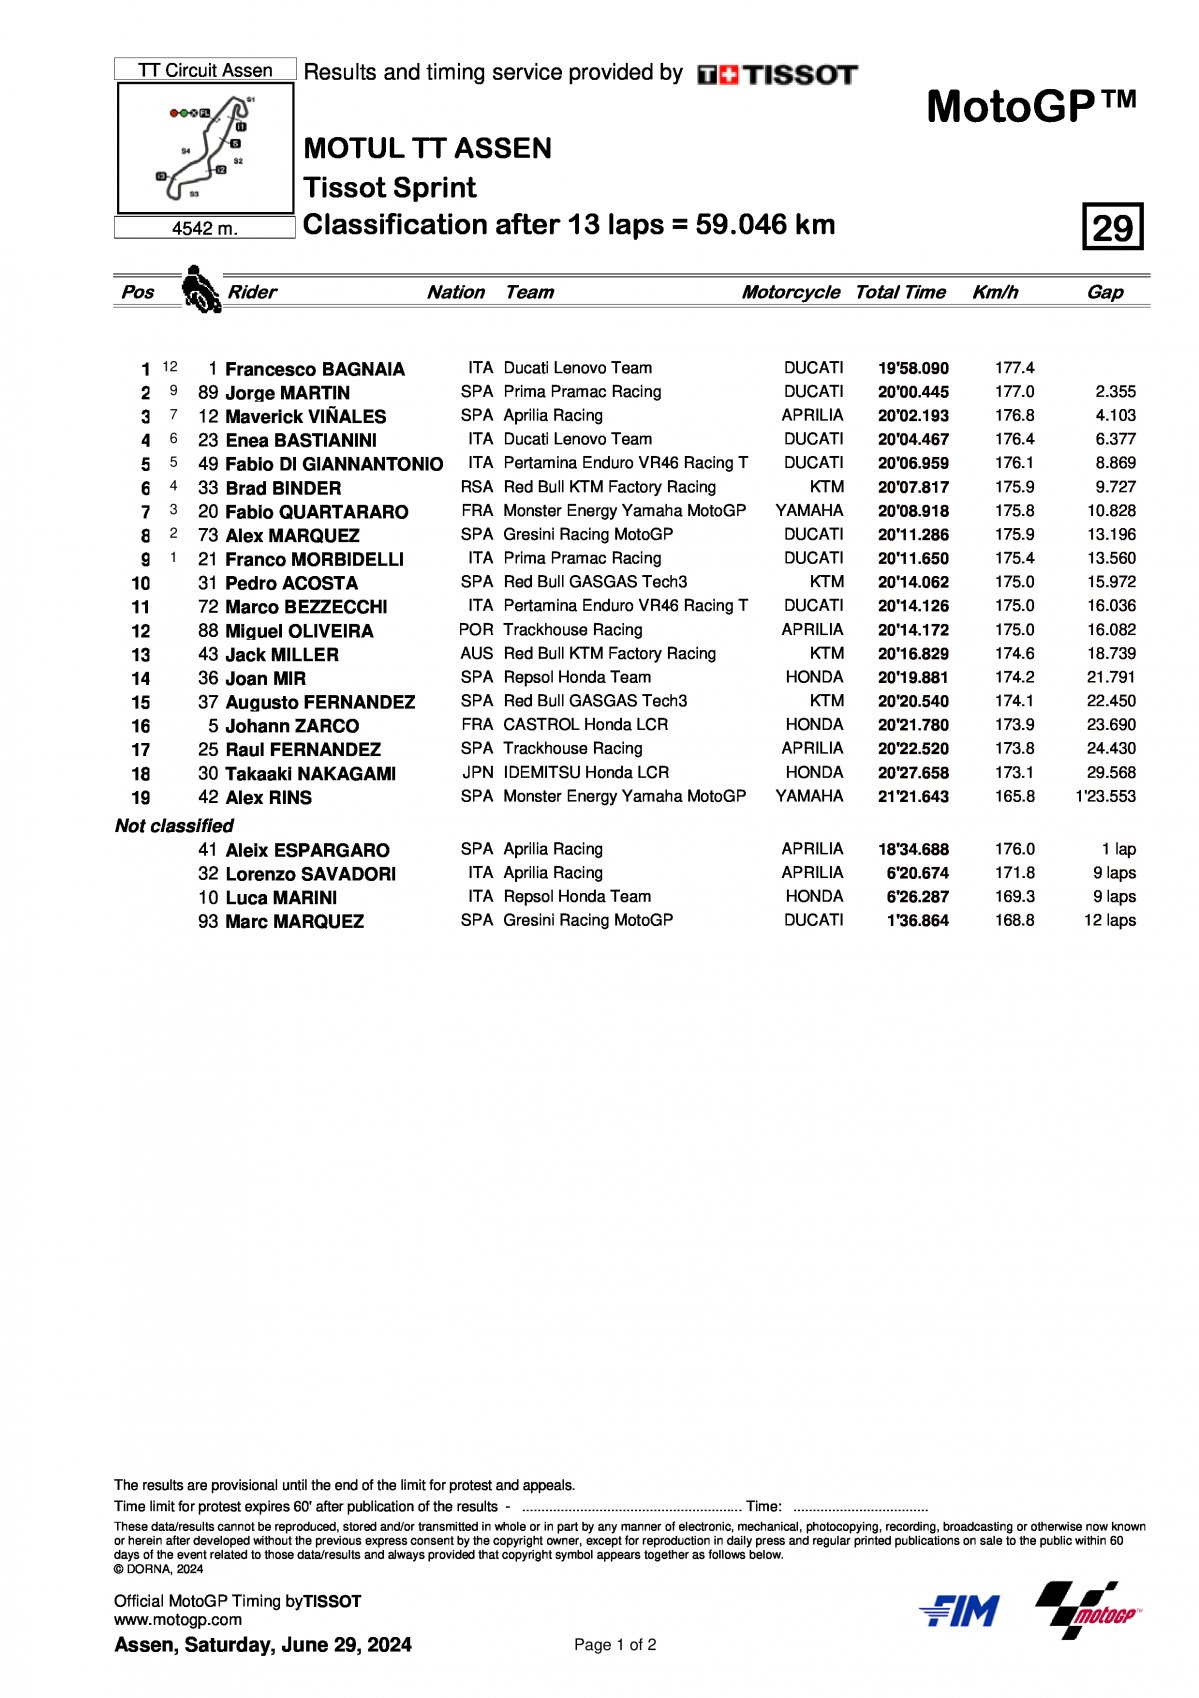 Результаты Tissot Sprint Race DutchGP MotoGP 2024 (29/06/2024)